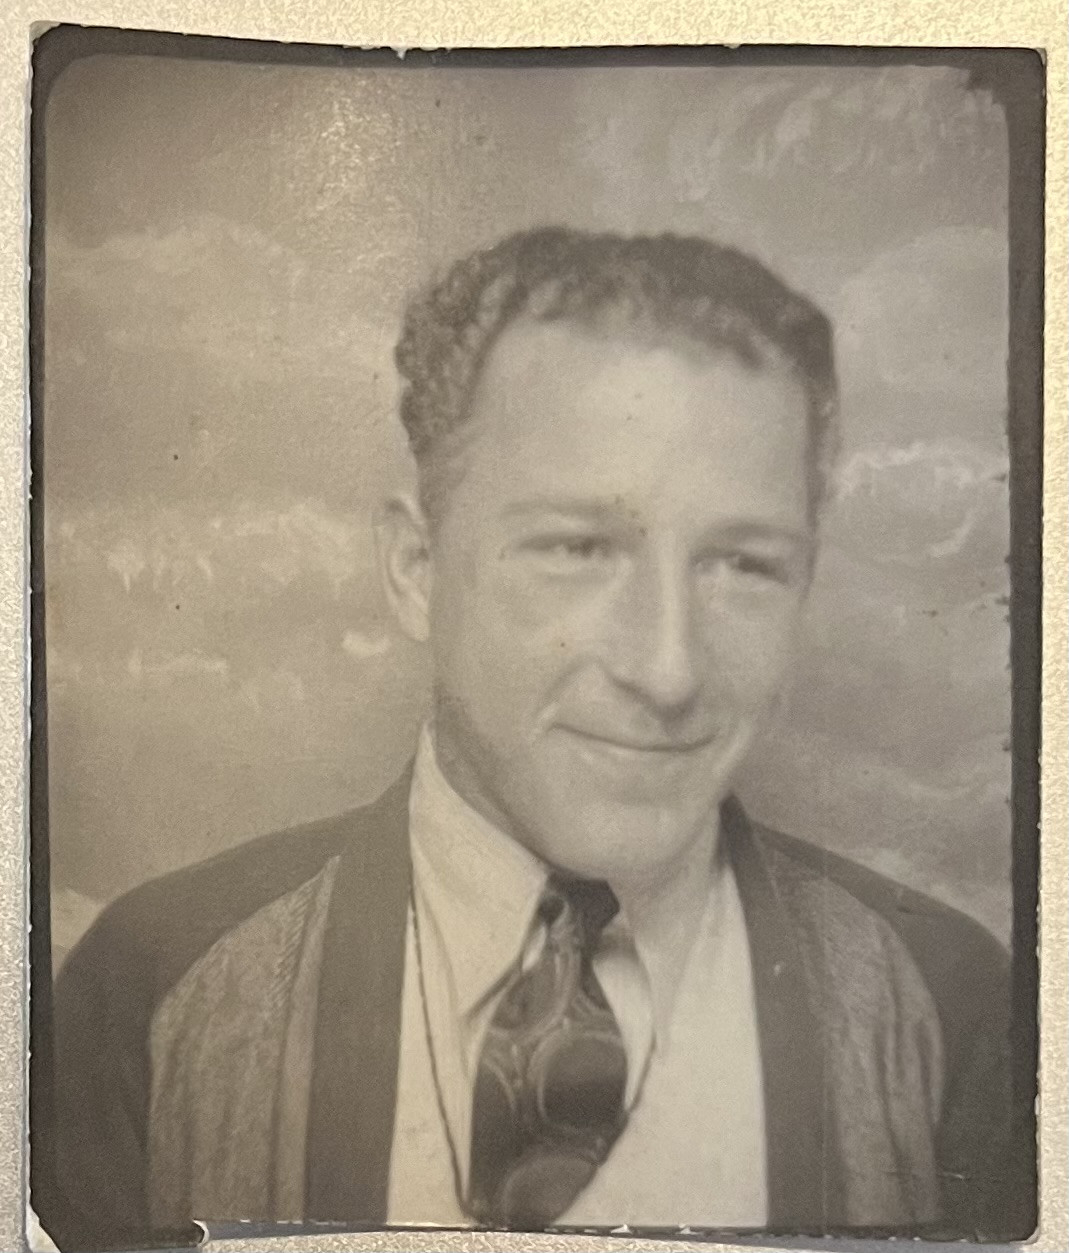 Donald Smith, Topeka, KS, 1938